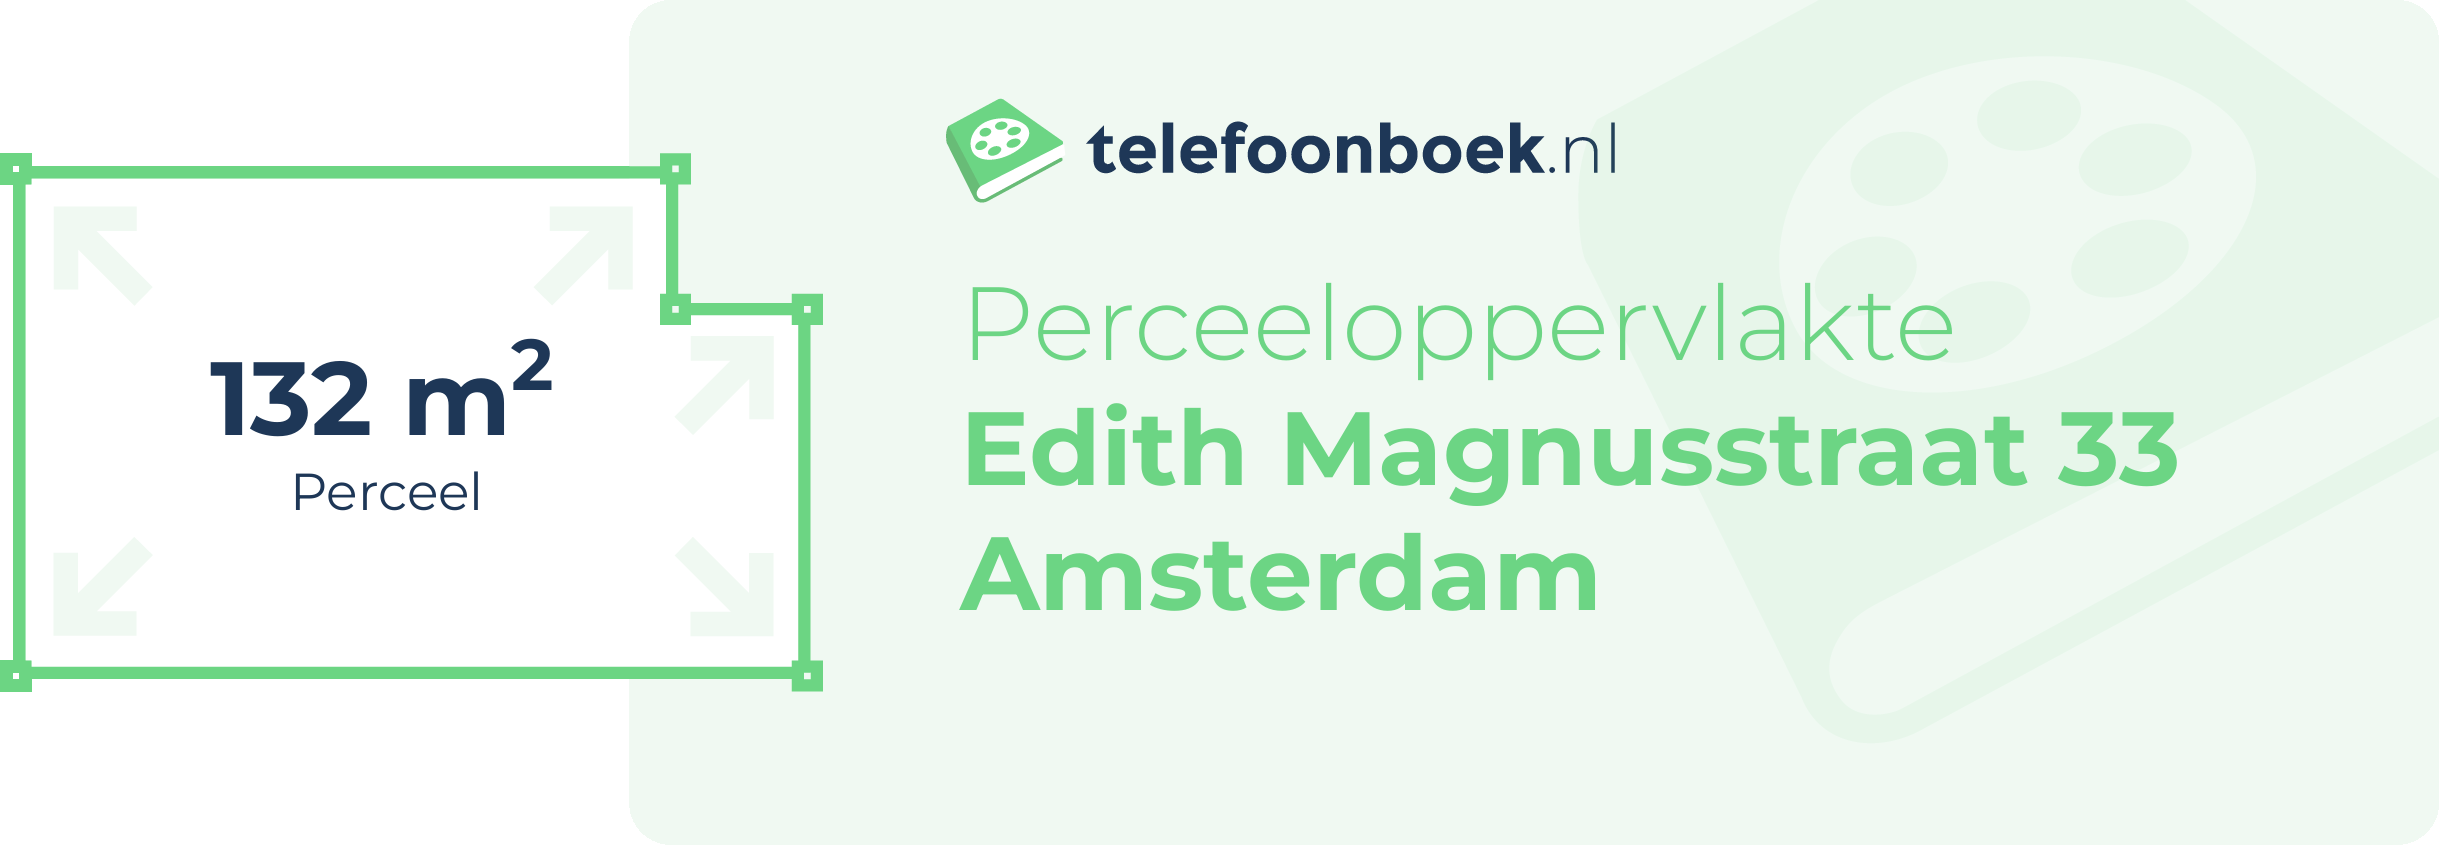 Perceeloppervlakte Edith Magnusstraat 33 Amsterdam